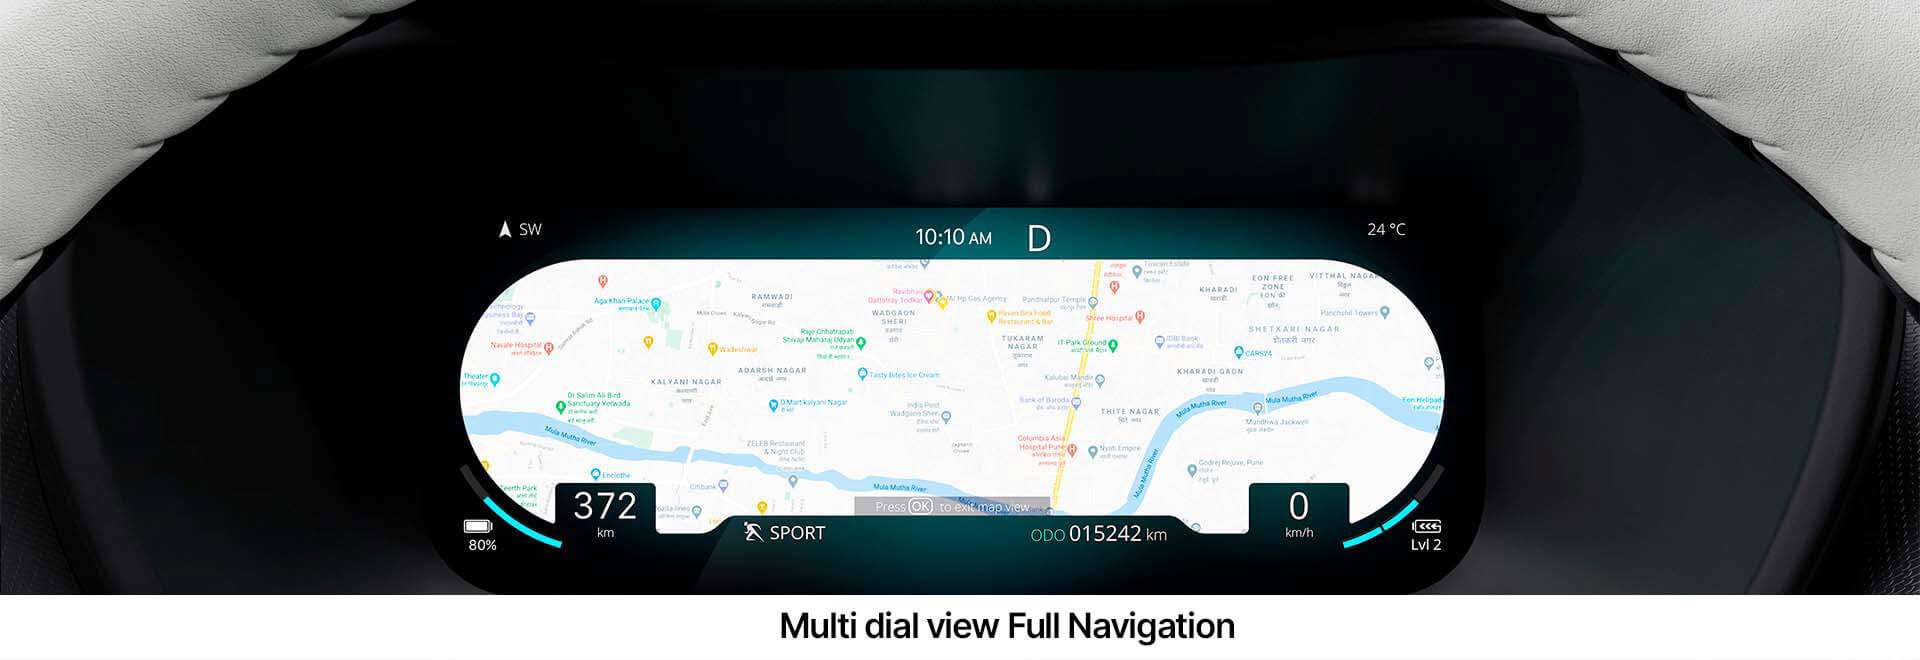 Navigation-Full-view_1920x660.jpg